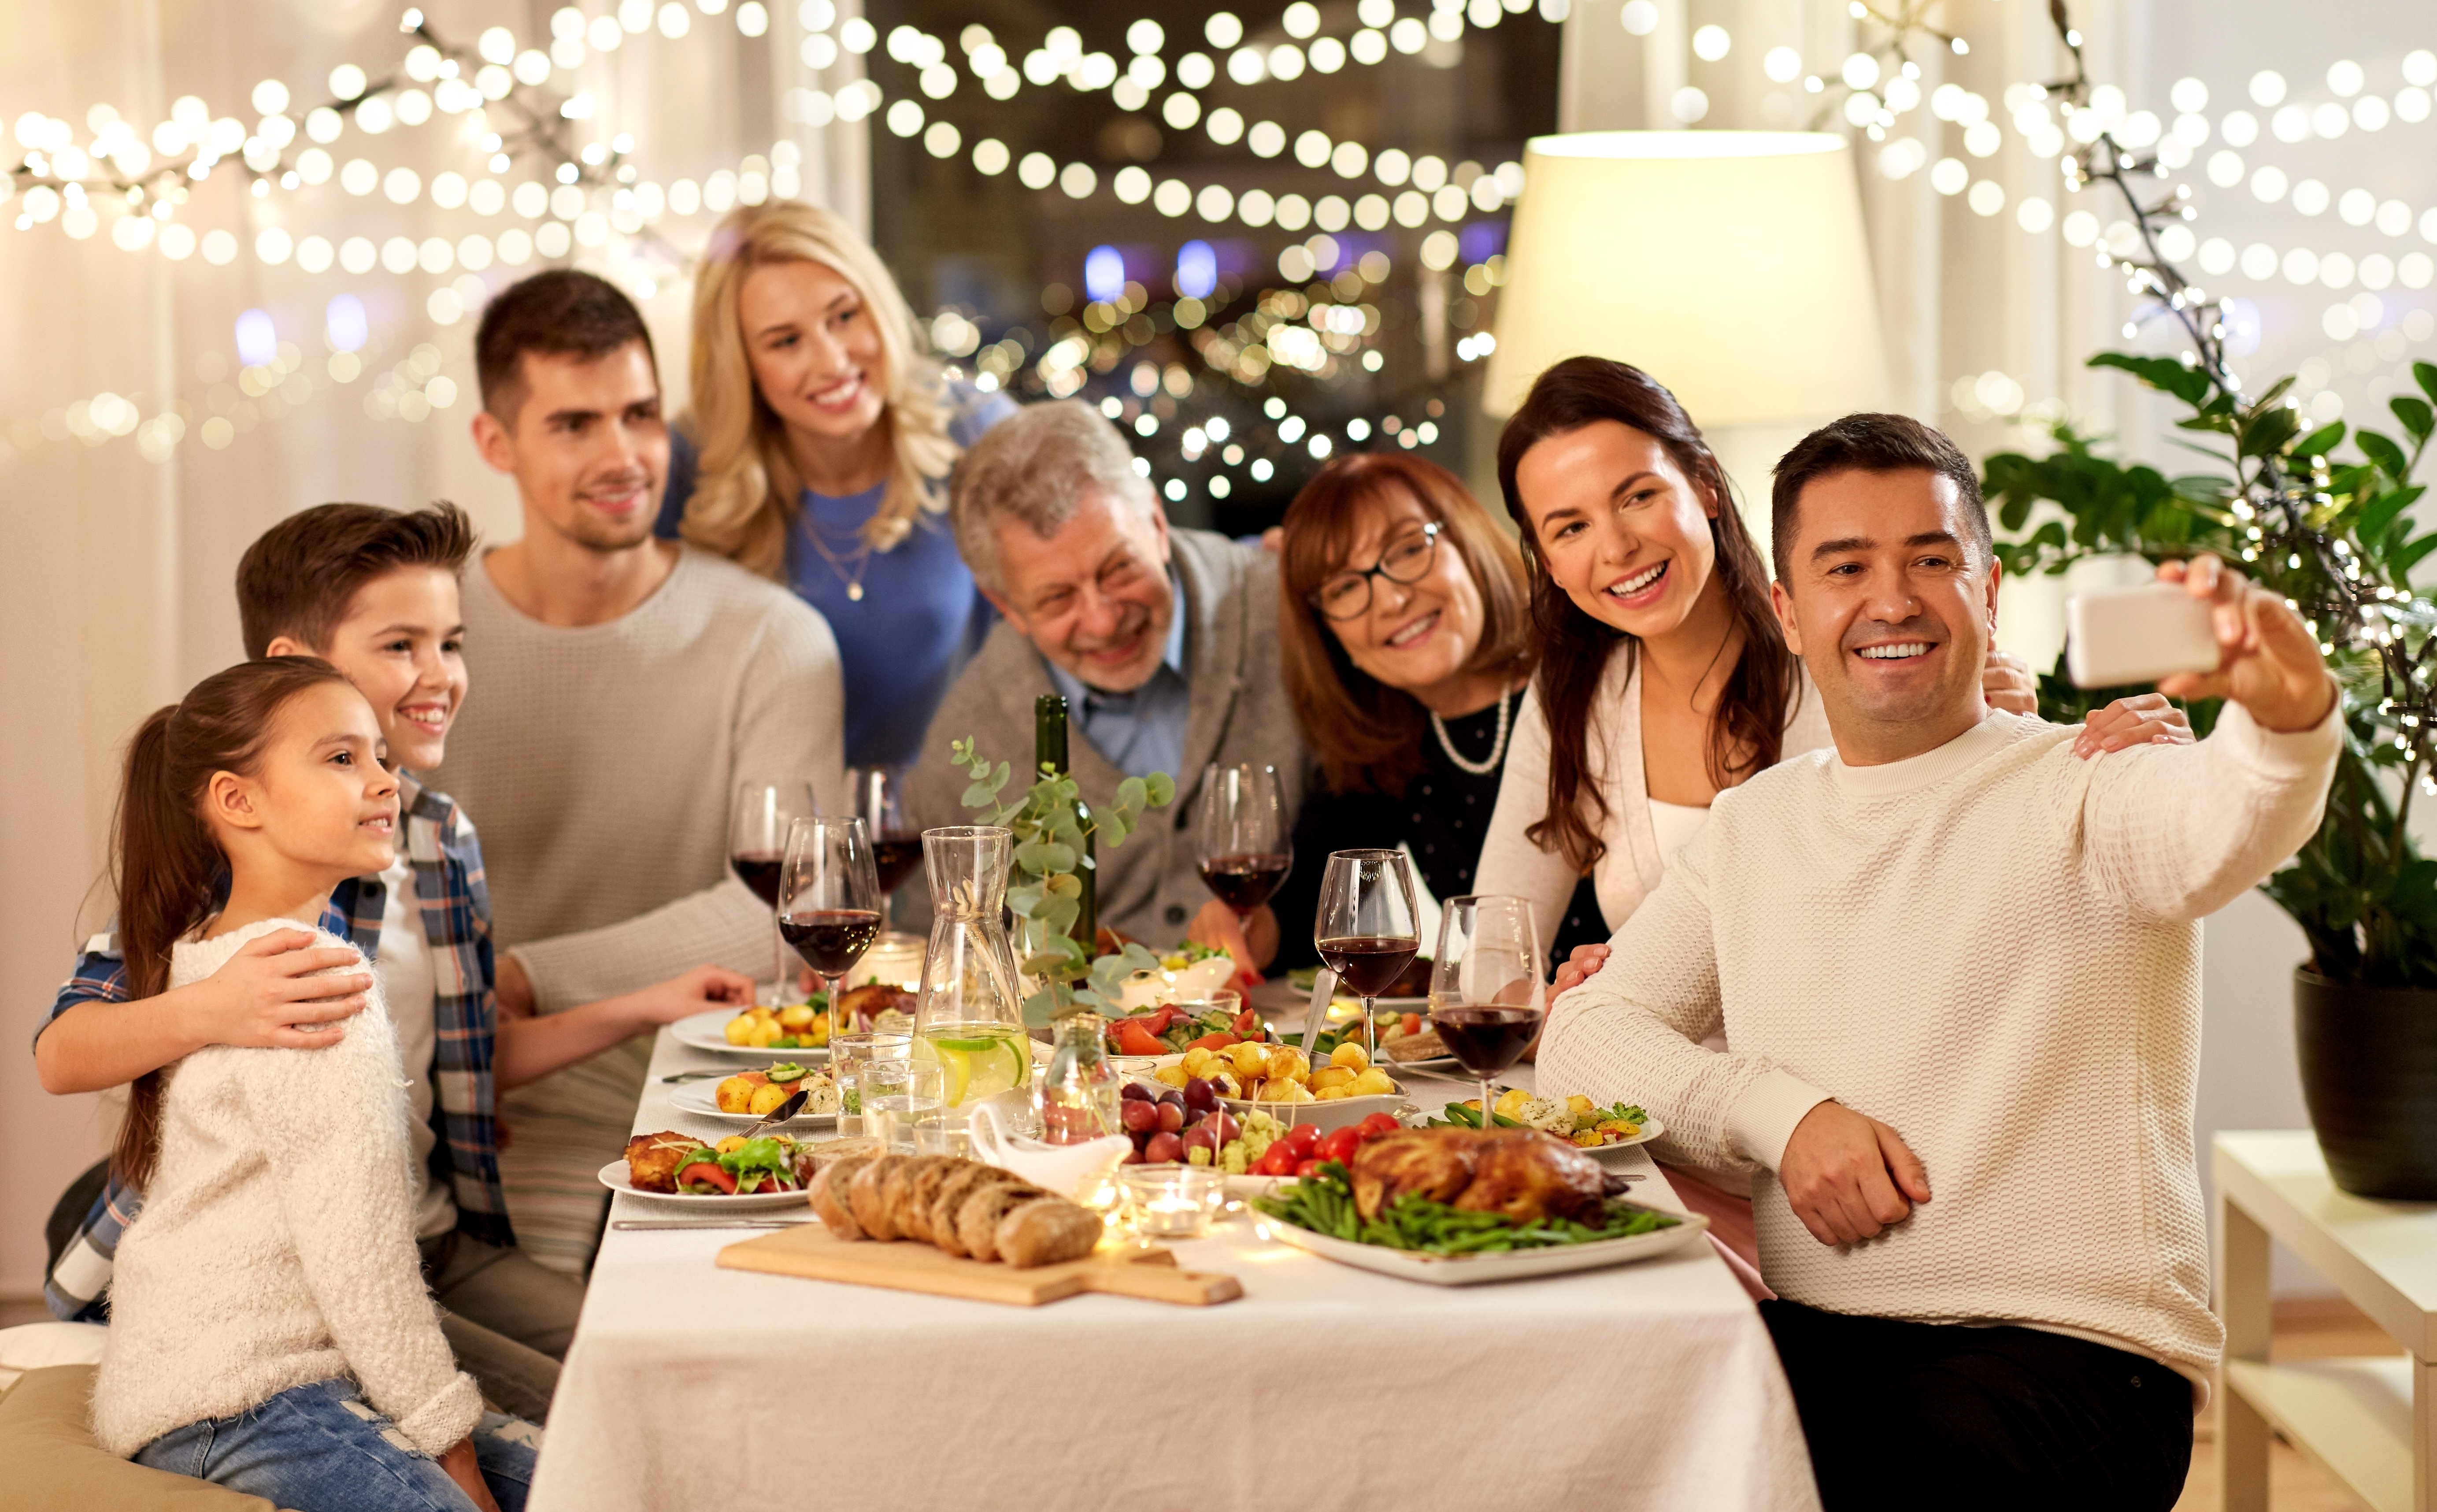 Un homme qui clique sur un selfie lors d'un dîner en famille | Source : Shutterstock